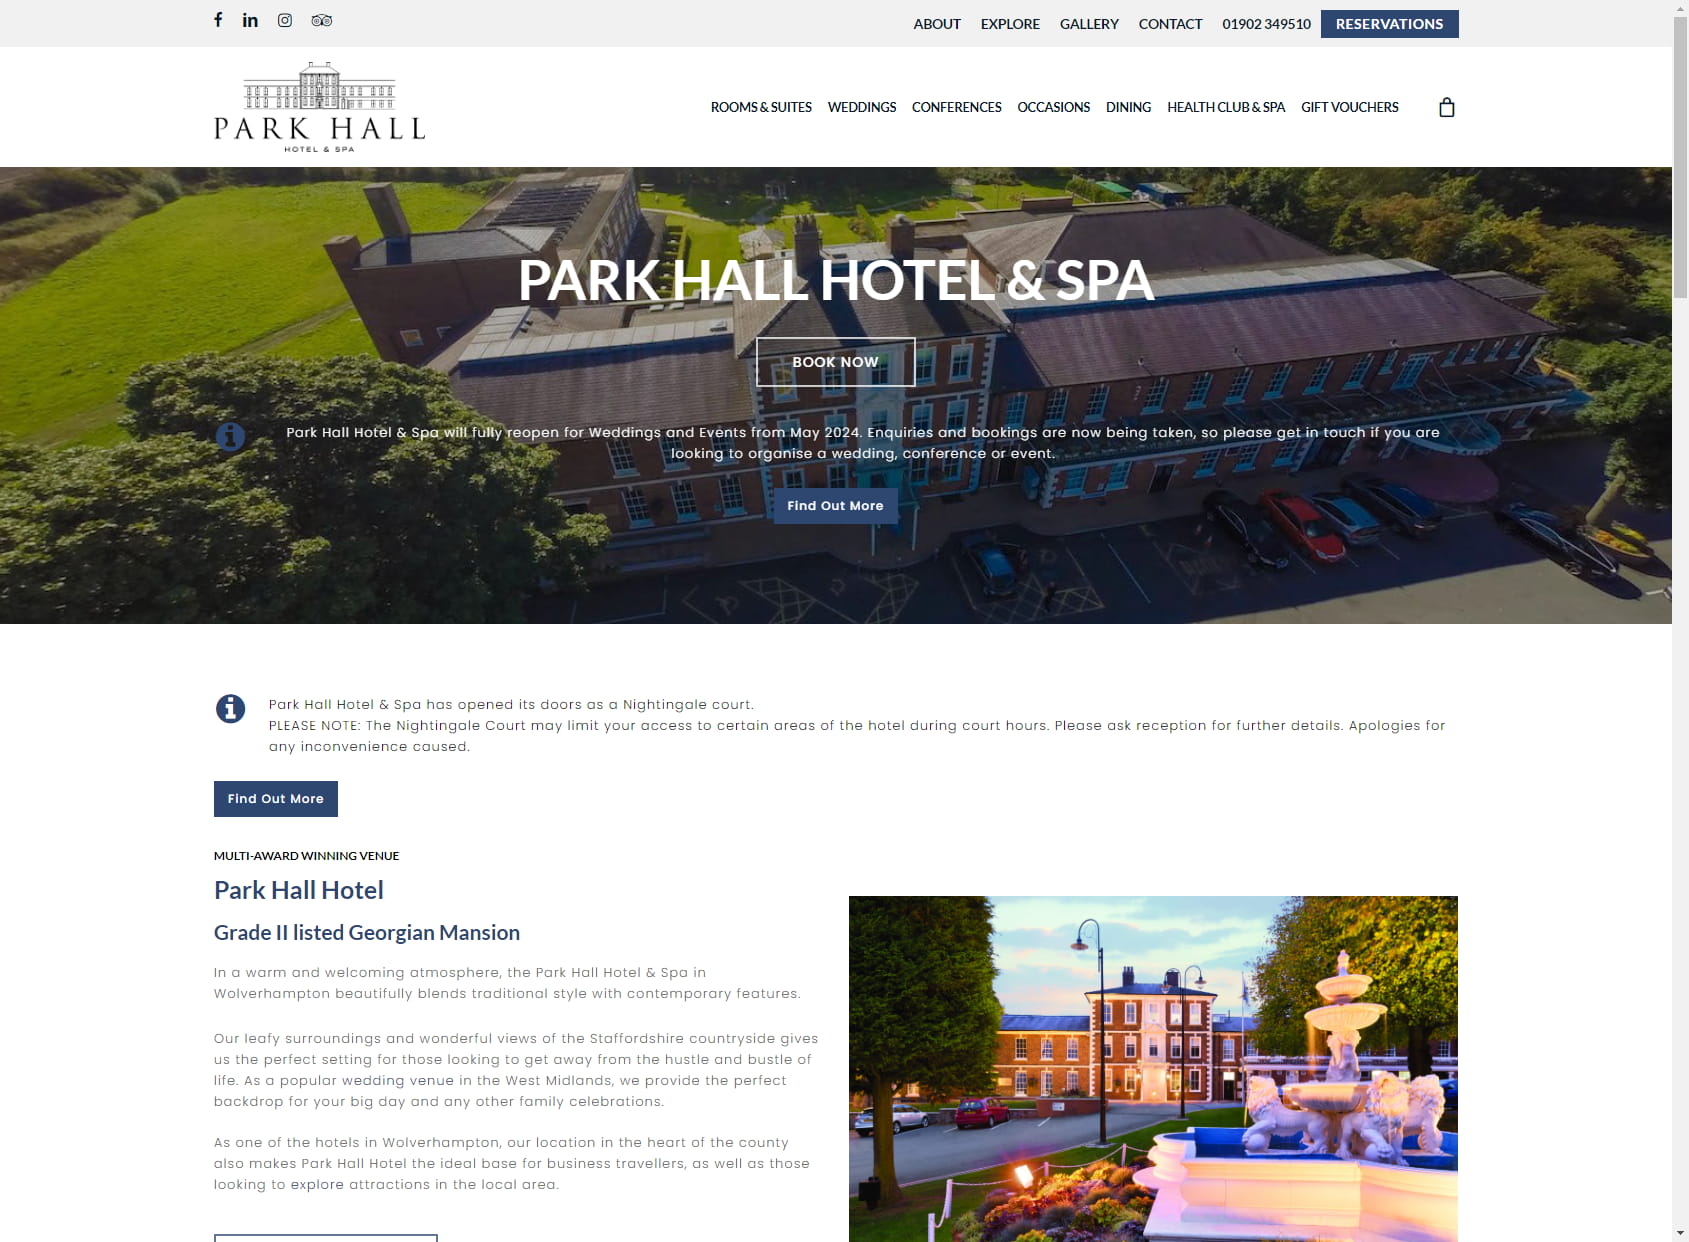 Park Hall Health Club and Spa